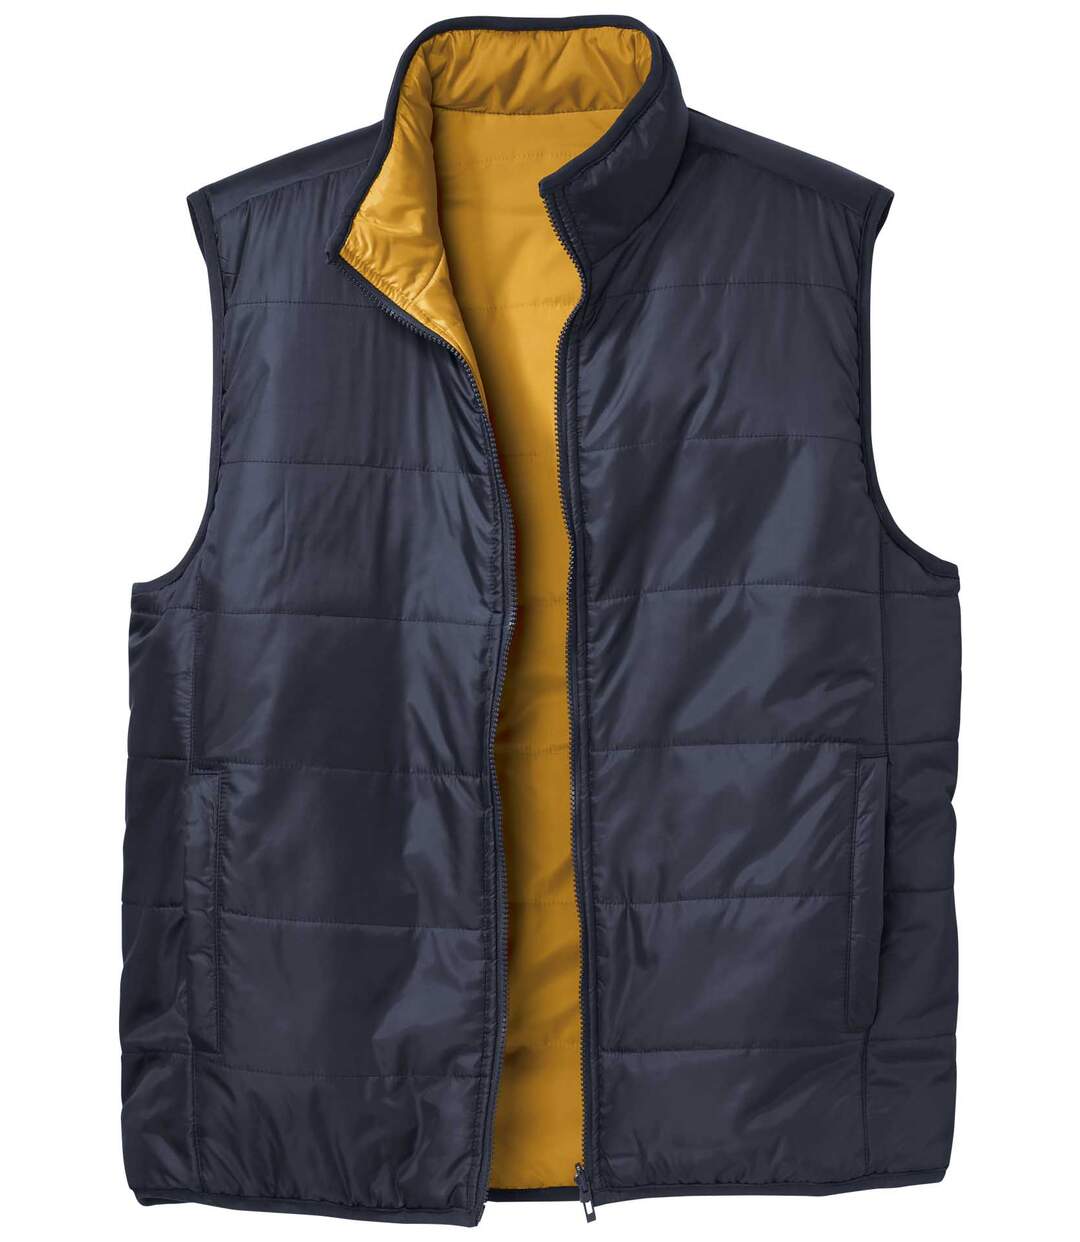 Obojstranná prešívaná vesta Eagle Canyon Atlas For Men